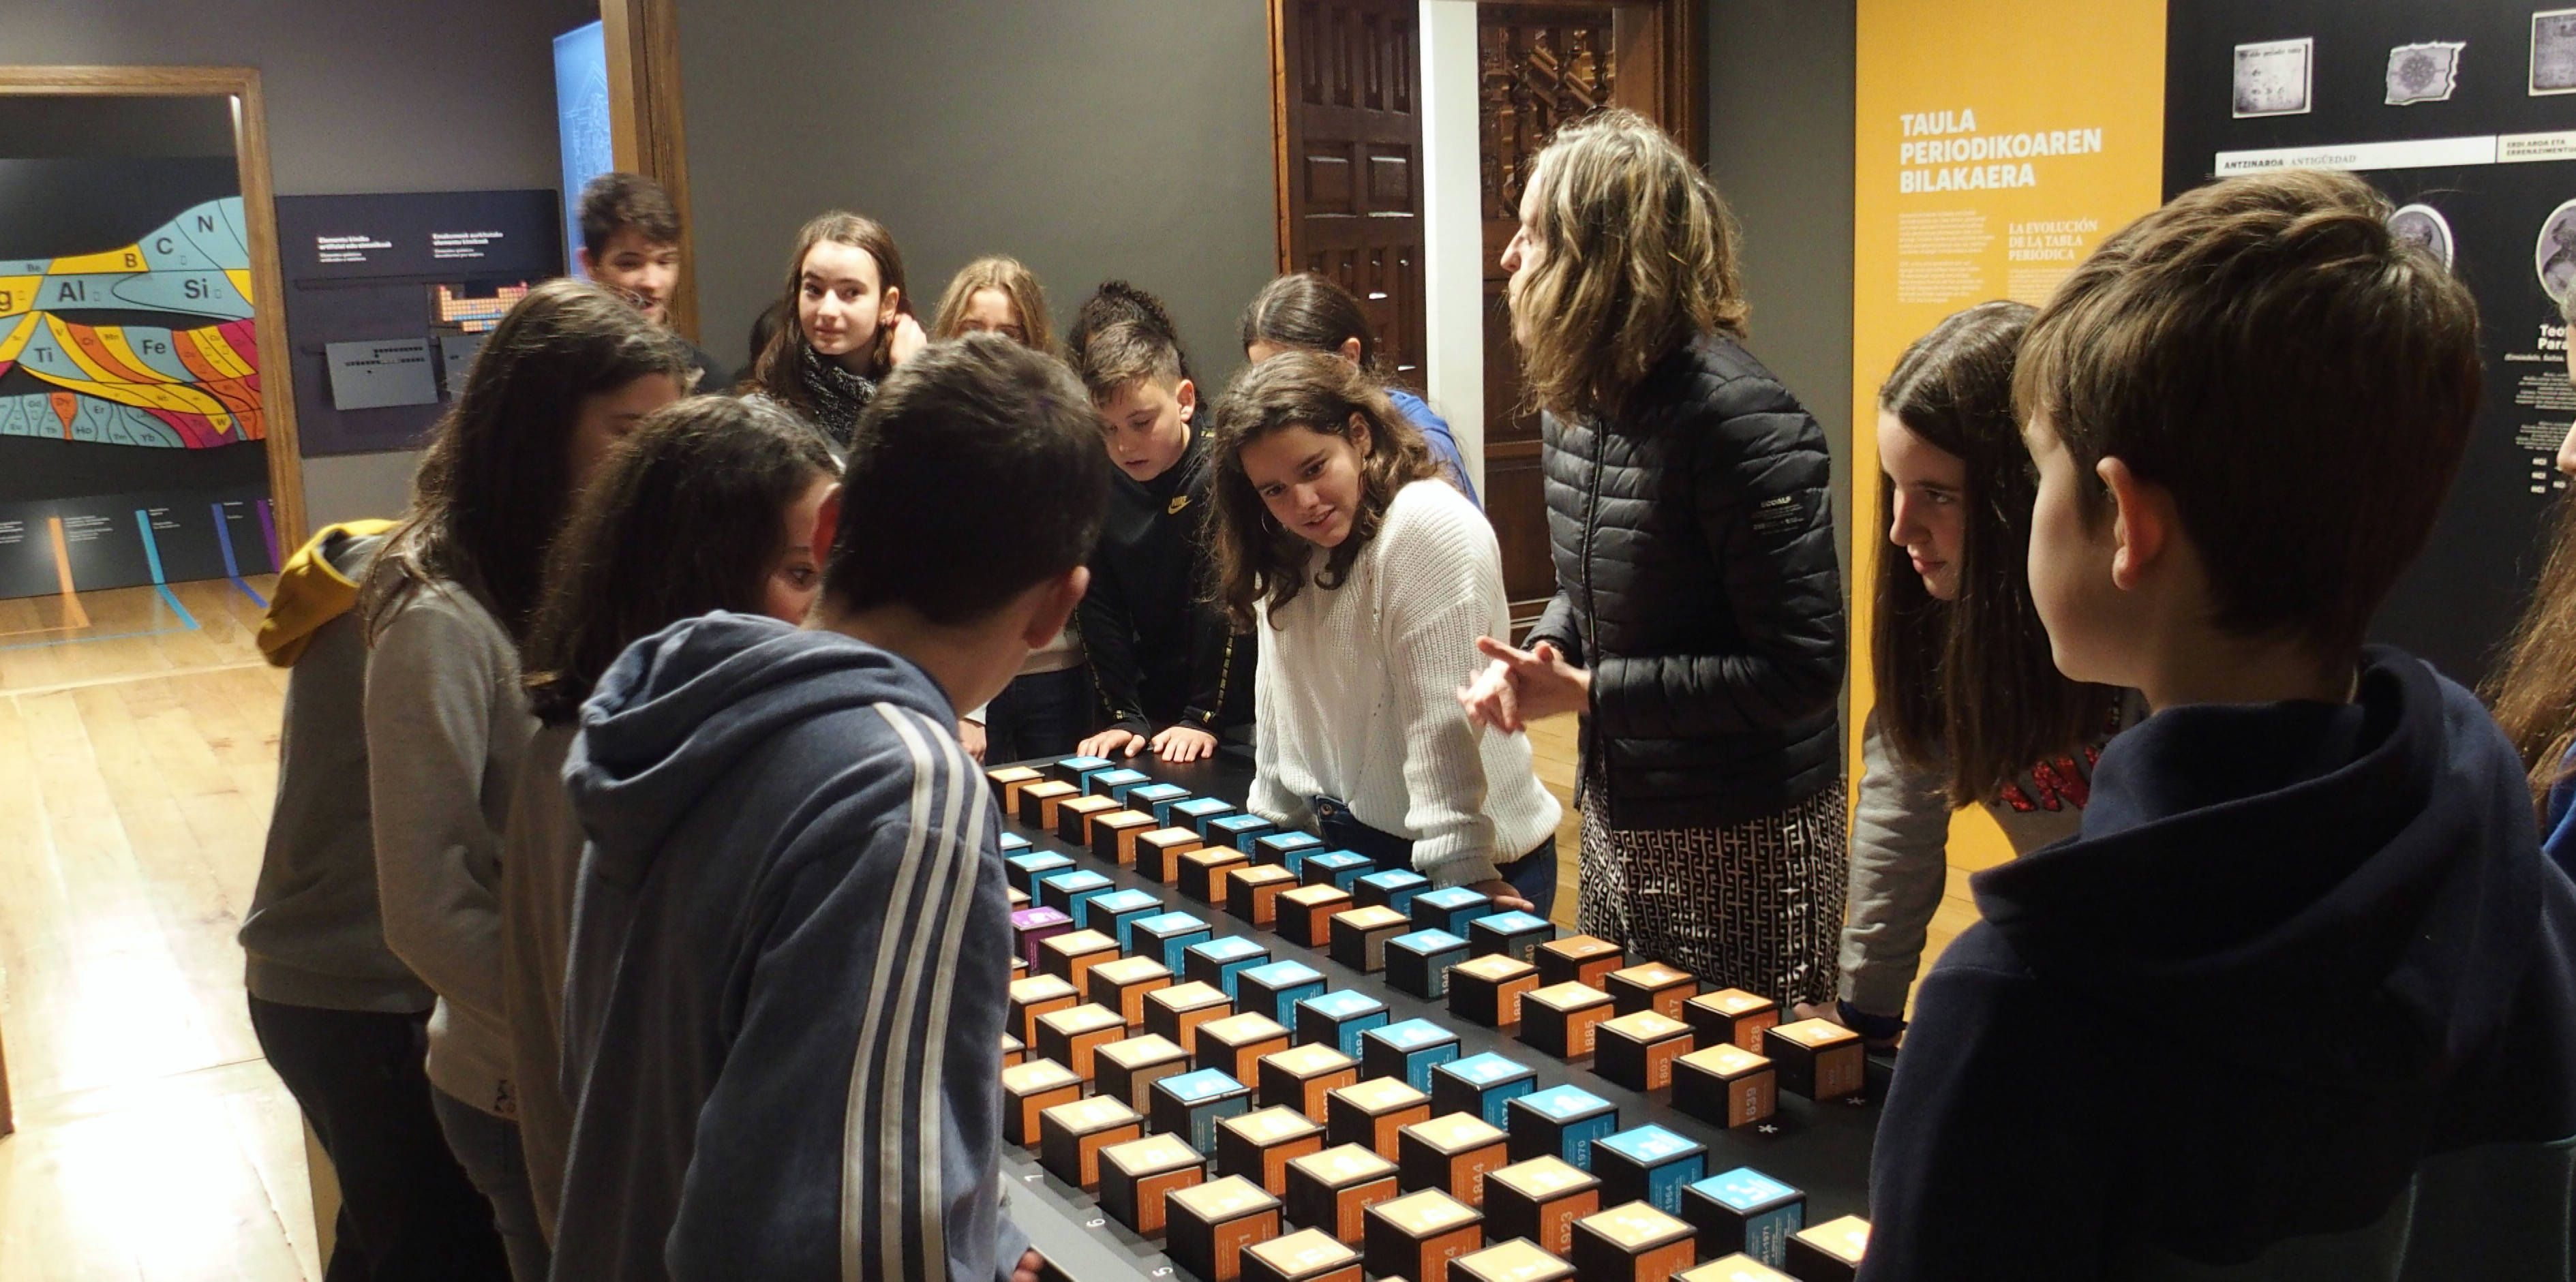 De nombreux étudiants ont visité l'exposition sur le tableau périodique.